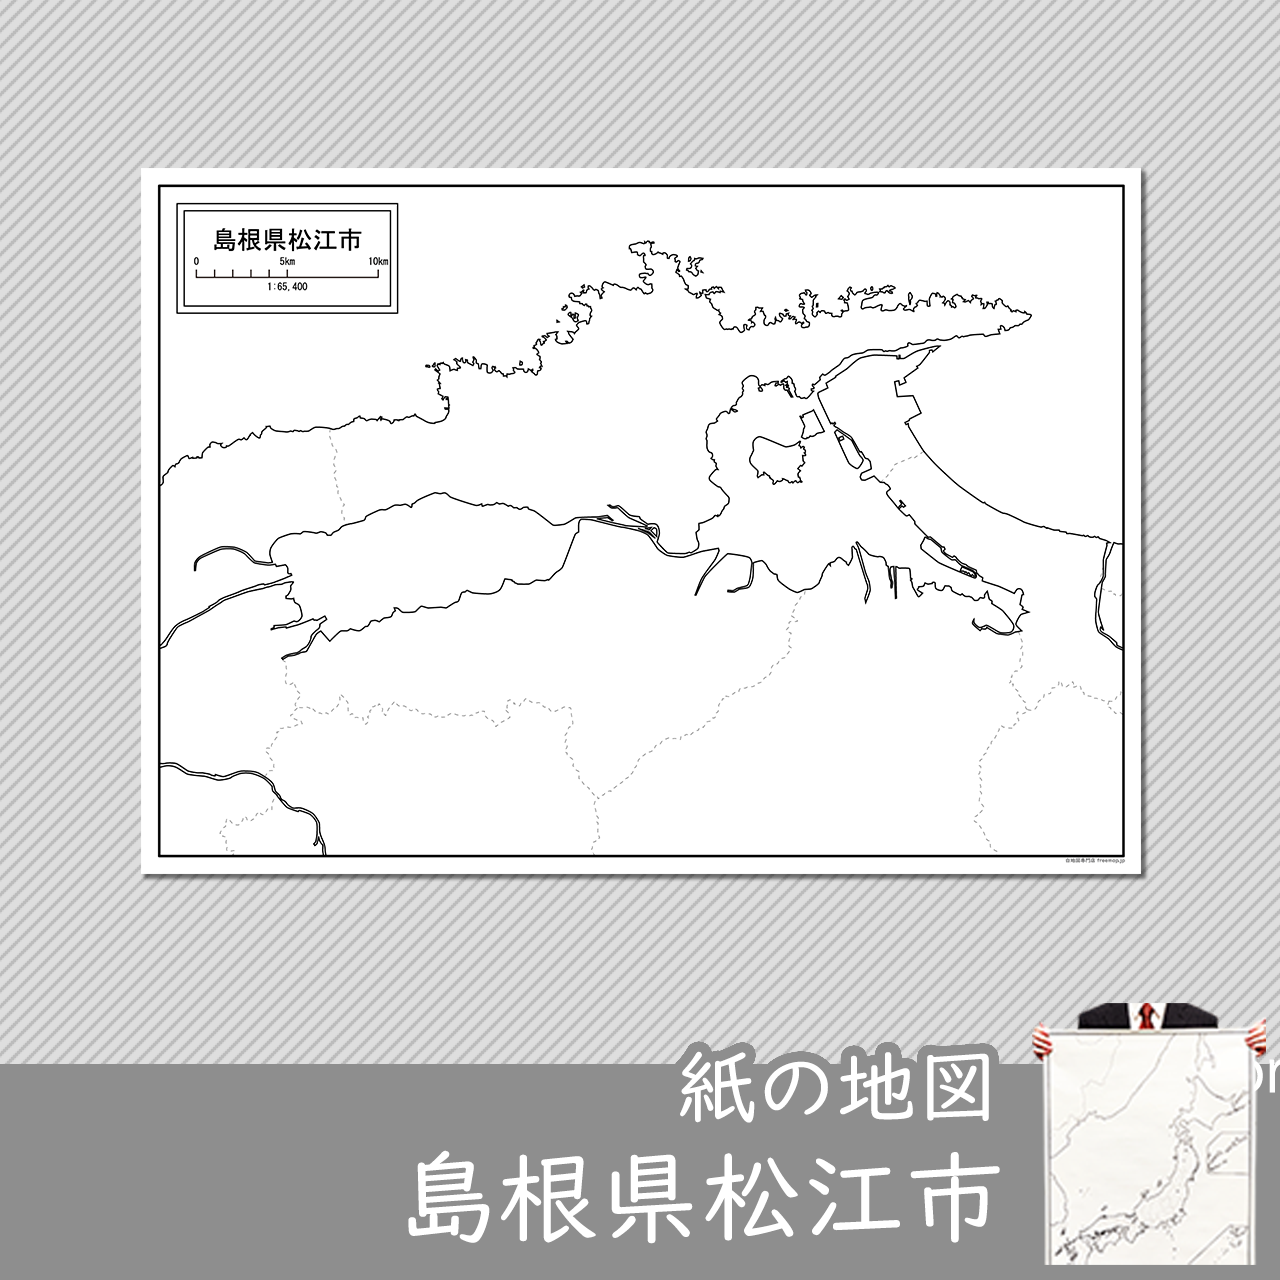 松江市の紙の白地図のサムネイル